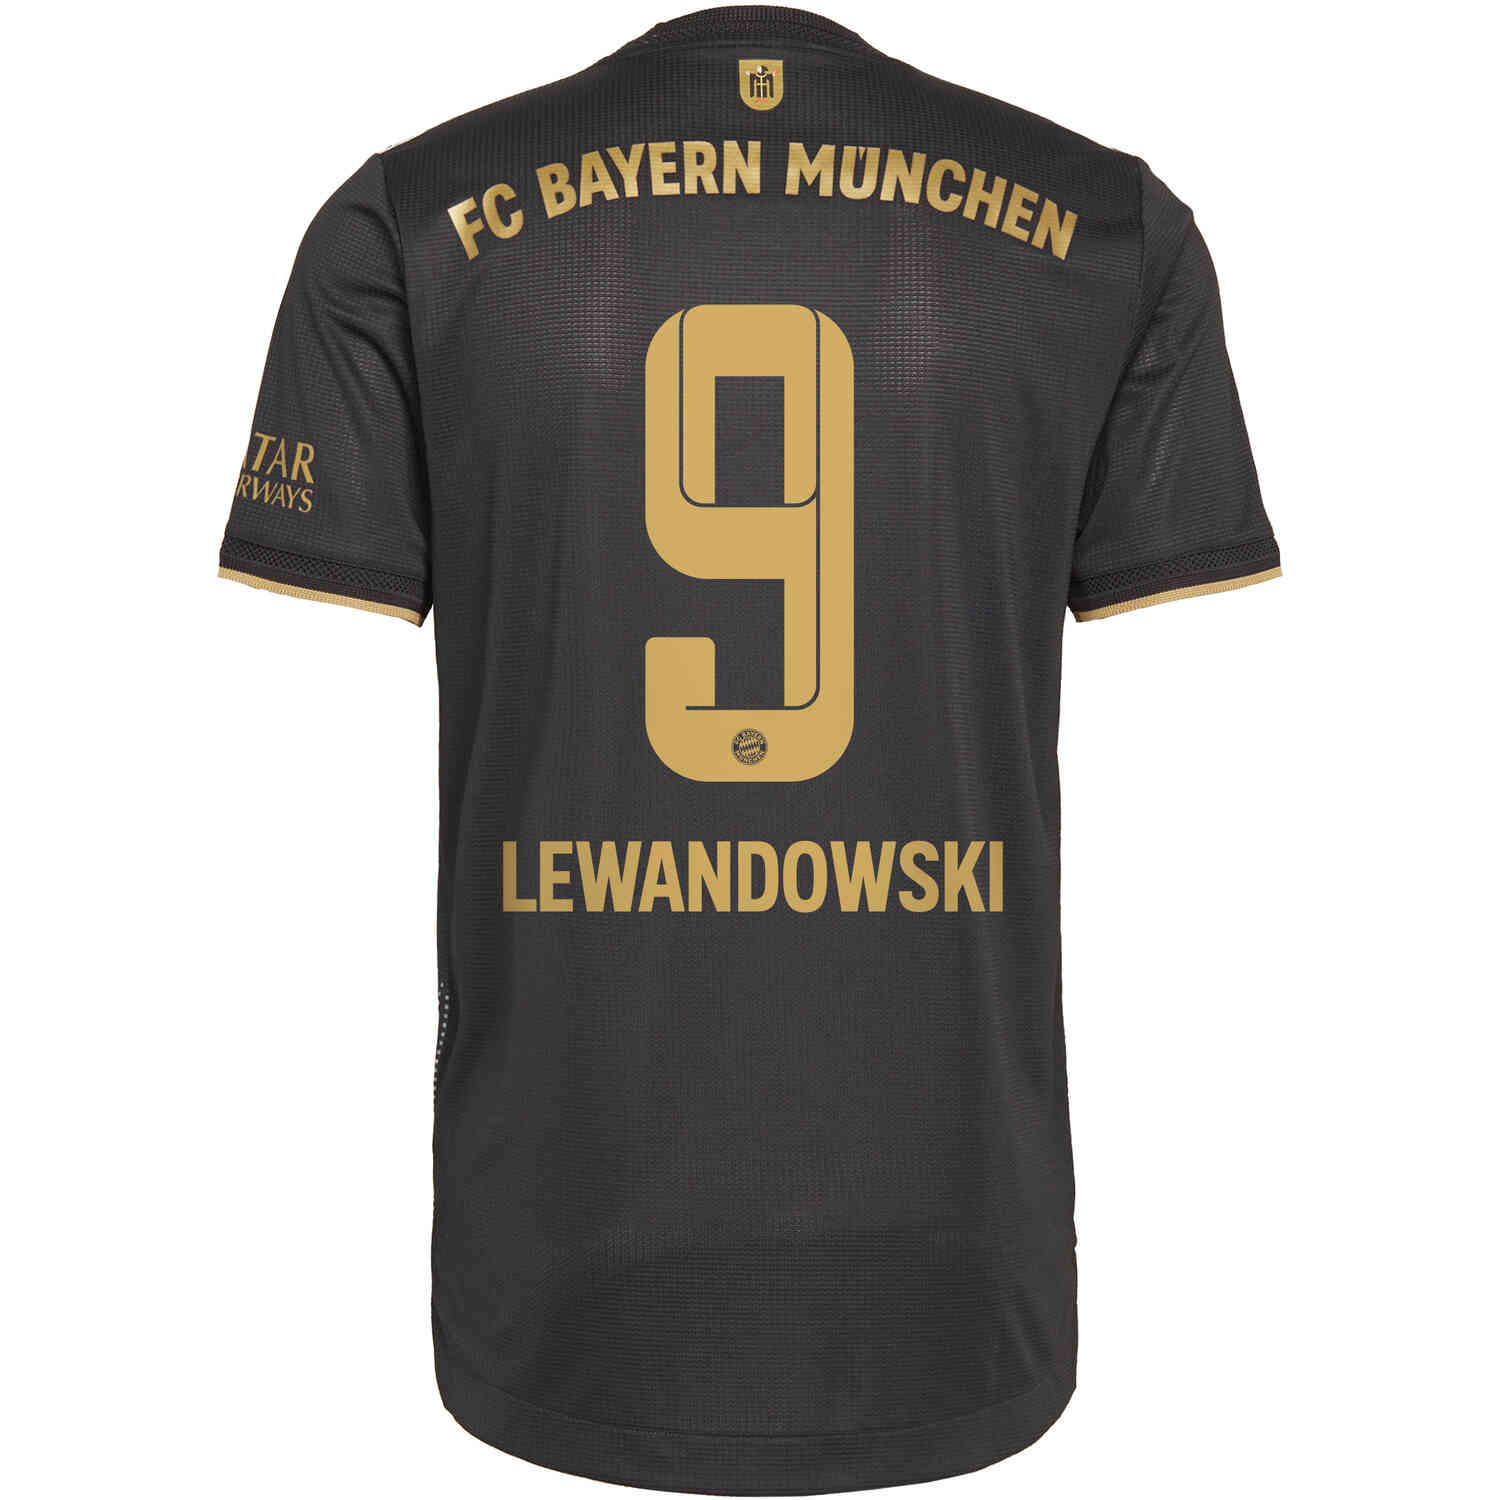 Peru pamper pill 2021/22 adidas Robert Lewandowski Bayern Munich Away Authentic Jersey -  SoccerPro